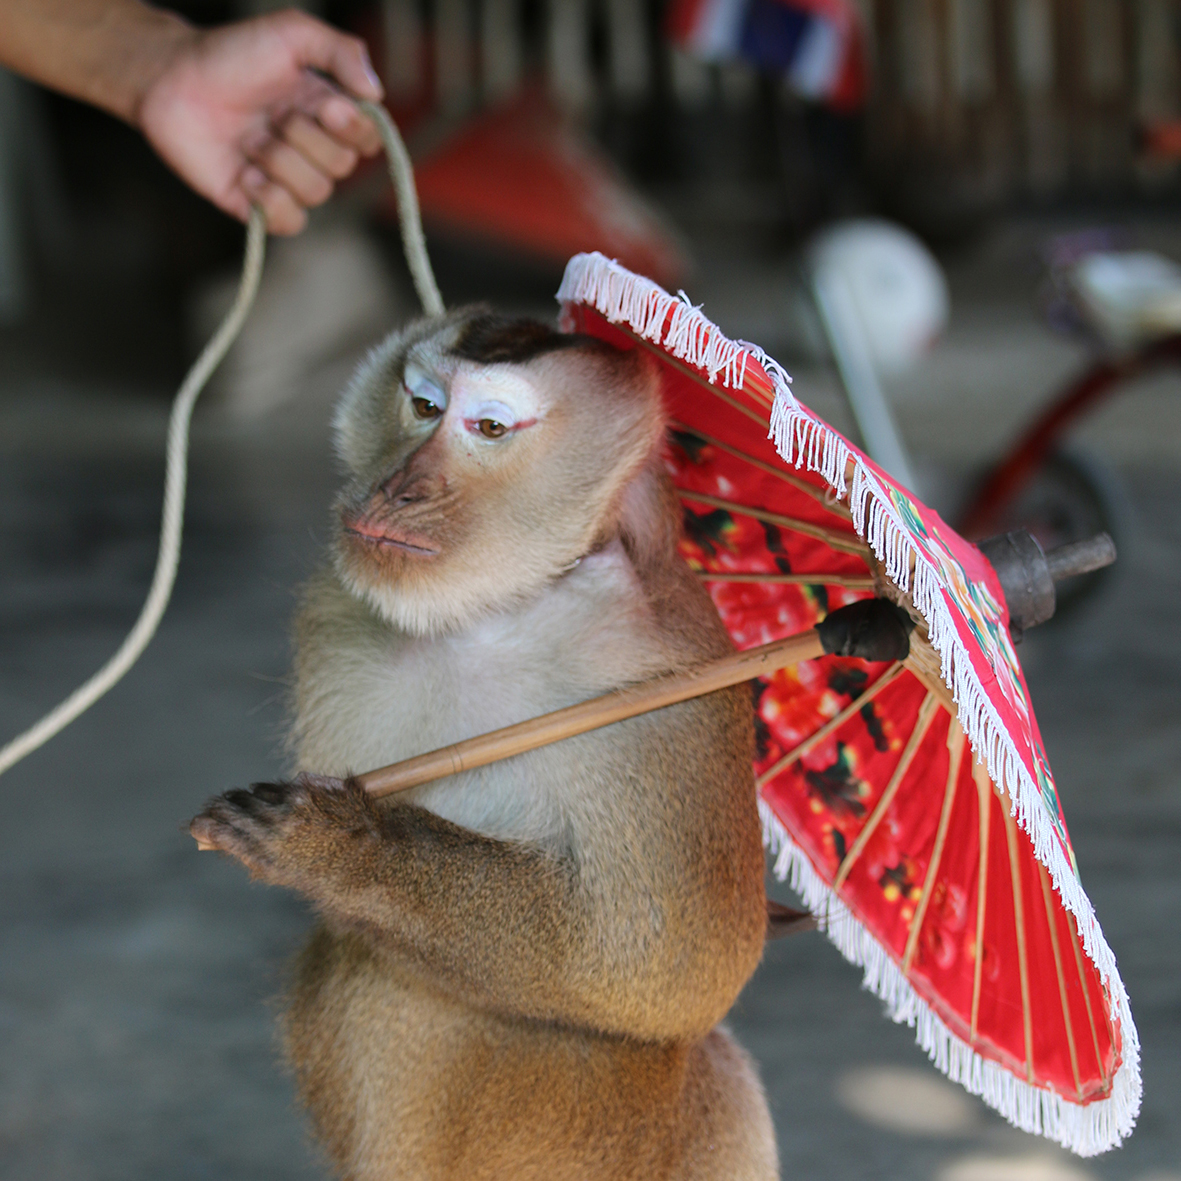 monkey on leash holding umbrella